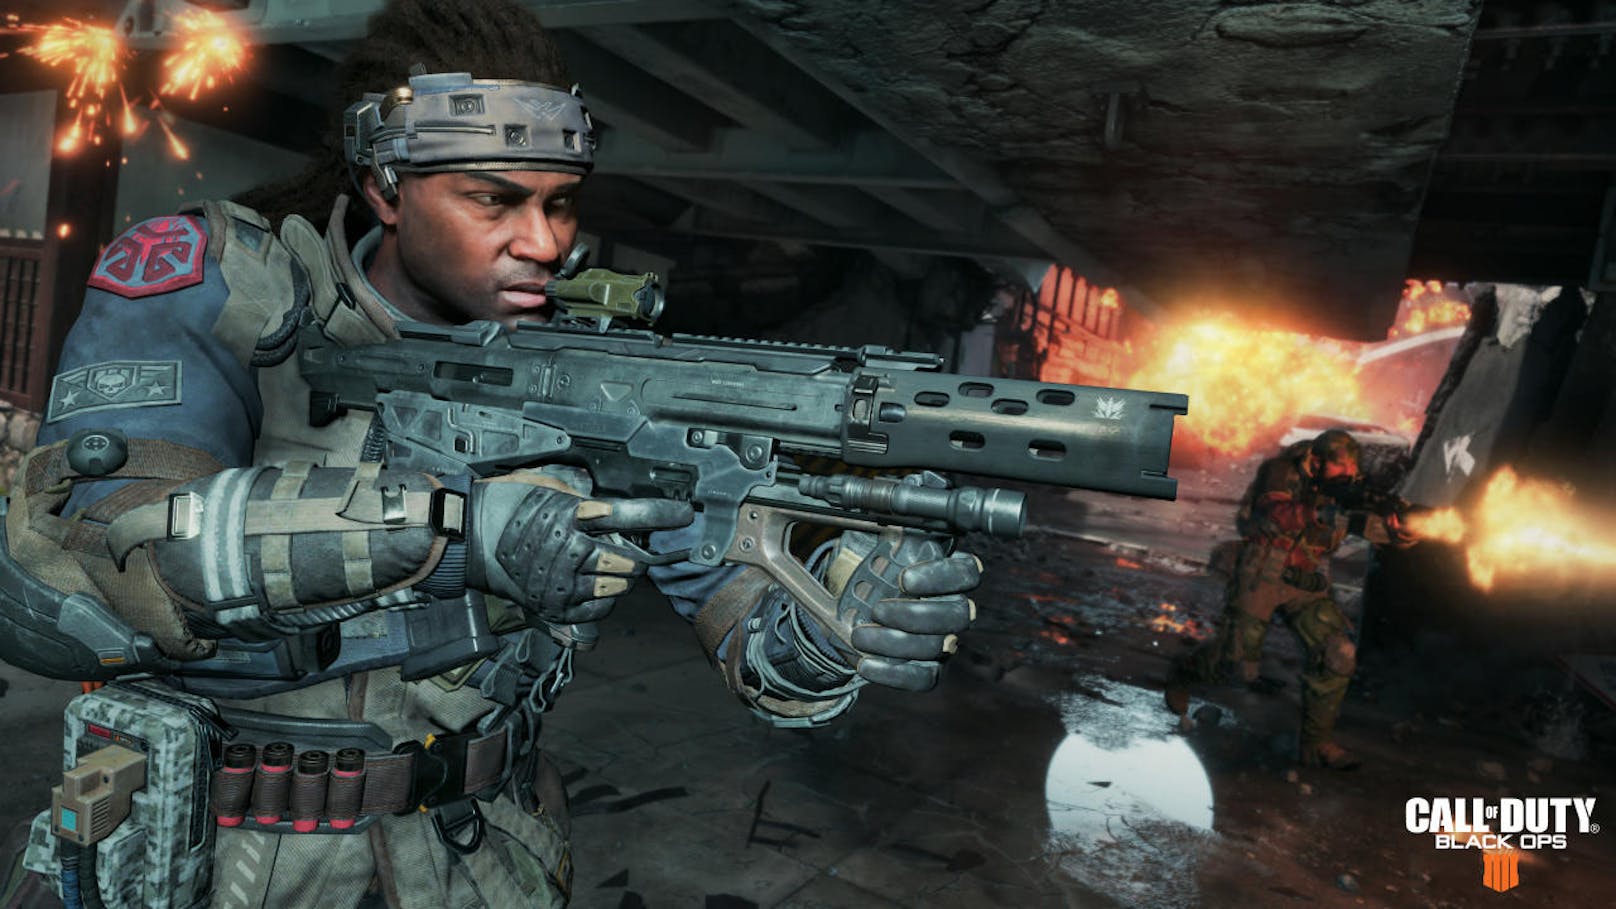 Die kostenlose Testversion des Battle Royale-Modus aus Black Ops 4 ist ab sofort auf PlayStation 4, Xbox One und PC verfügbar, inklusive dem neuen Spielmodus "Am Boden, aber nicht raus". Blackout, der beliebte Battle Royale-Modus aus Call of Duty: Black Ops 4, steht auf allen Plattformen zum Herunterladen und Testen bereit. Die Testversion ist bis zum 24. Jänner (19 Uhr) verfügbar: Alle Fortschritte und im Spiel verdienten Objekte werden gespeichert und sind direkt verfügbar, wenn ein Spieler nach der kostenlosen Testversion auf die Vollversion des Spiels umsteigt.